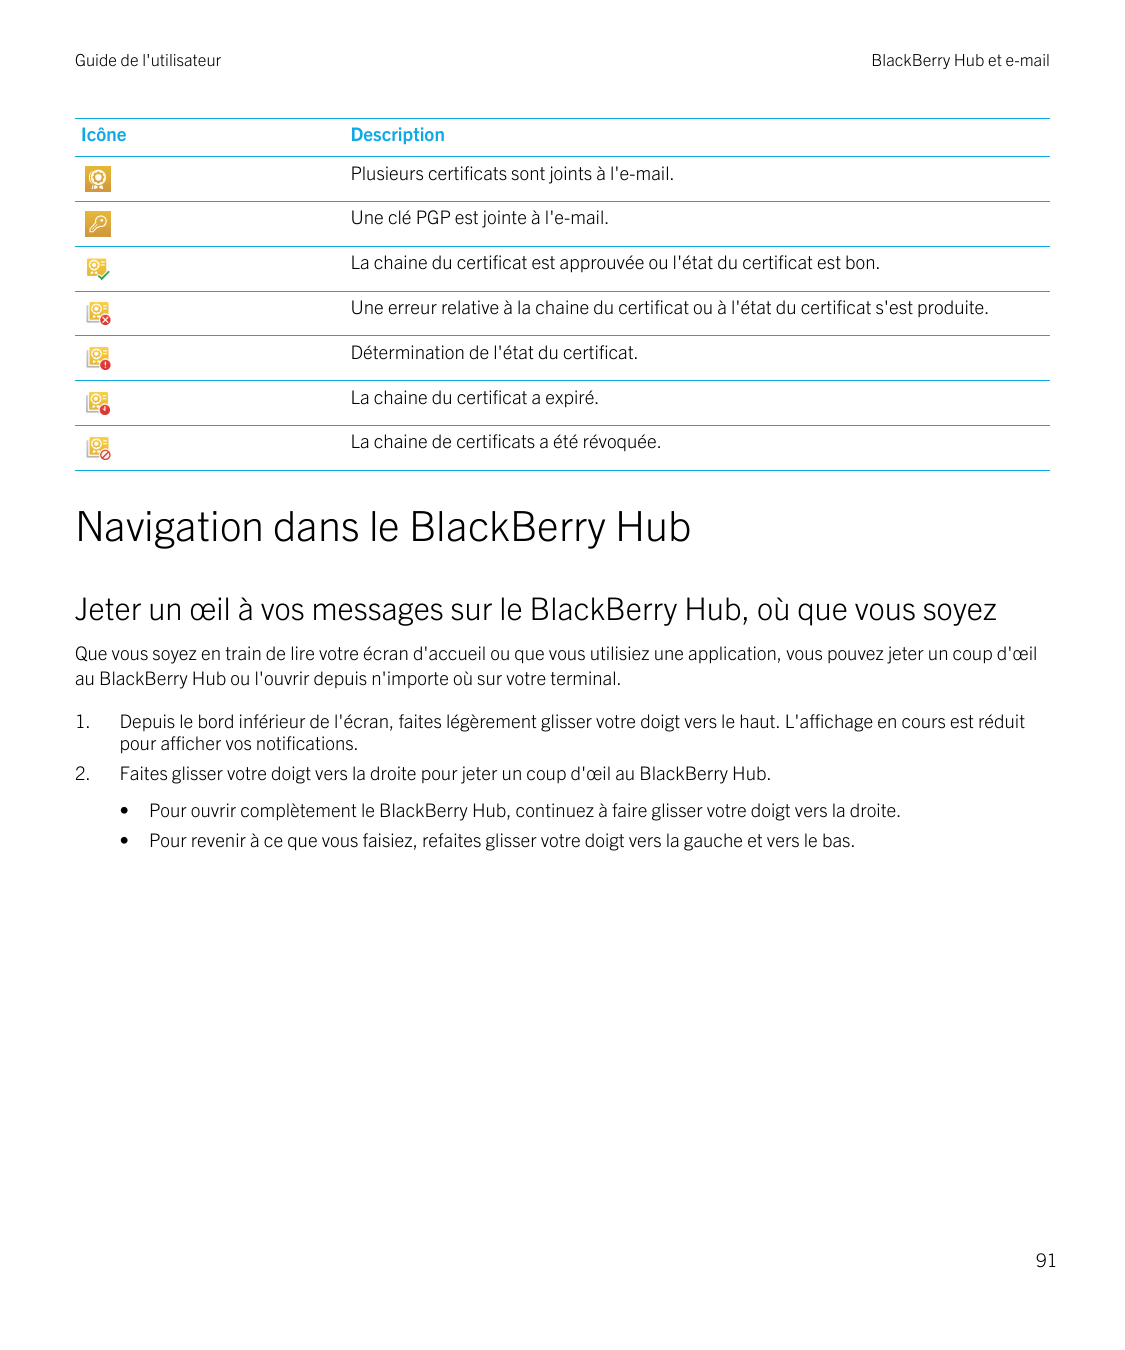 Guide de l'utilisateurIcôneBlackBerry Hub et e-mailDescriptionPlusieurs certificats sont joints à l'e-mail.Une clé PGP est joint